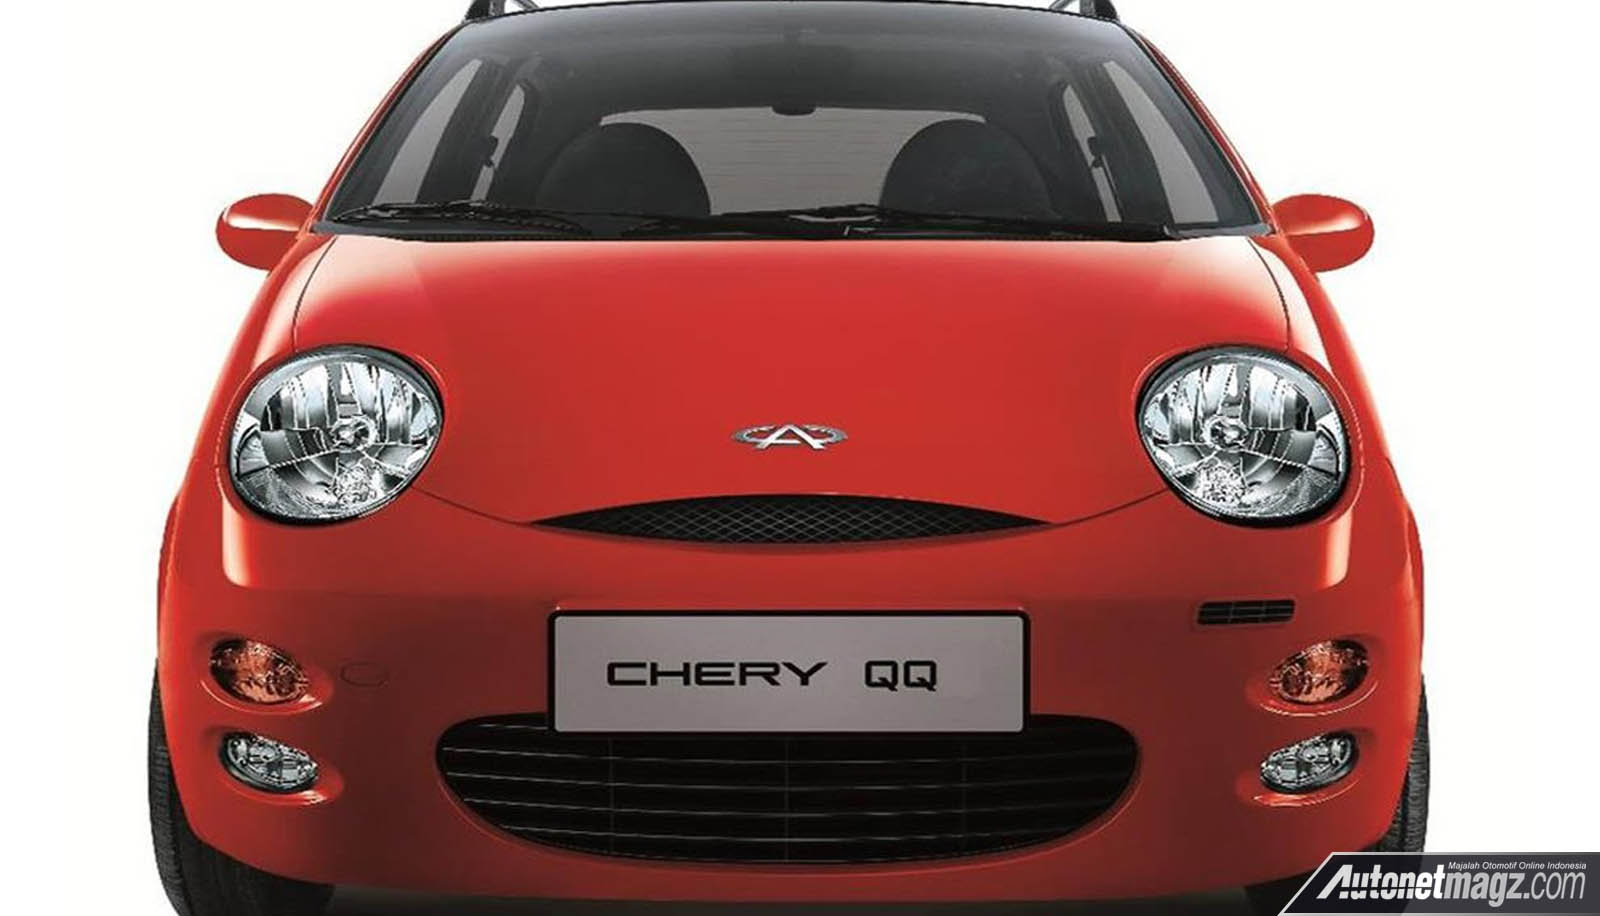 Berita, Cherry QQ: Chery Siap Terjun di Eropa Dengan Merk Baru